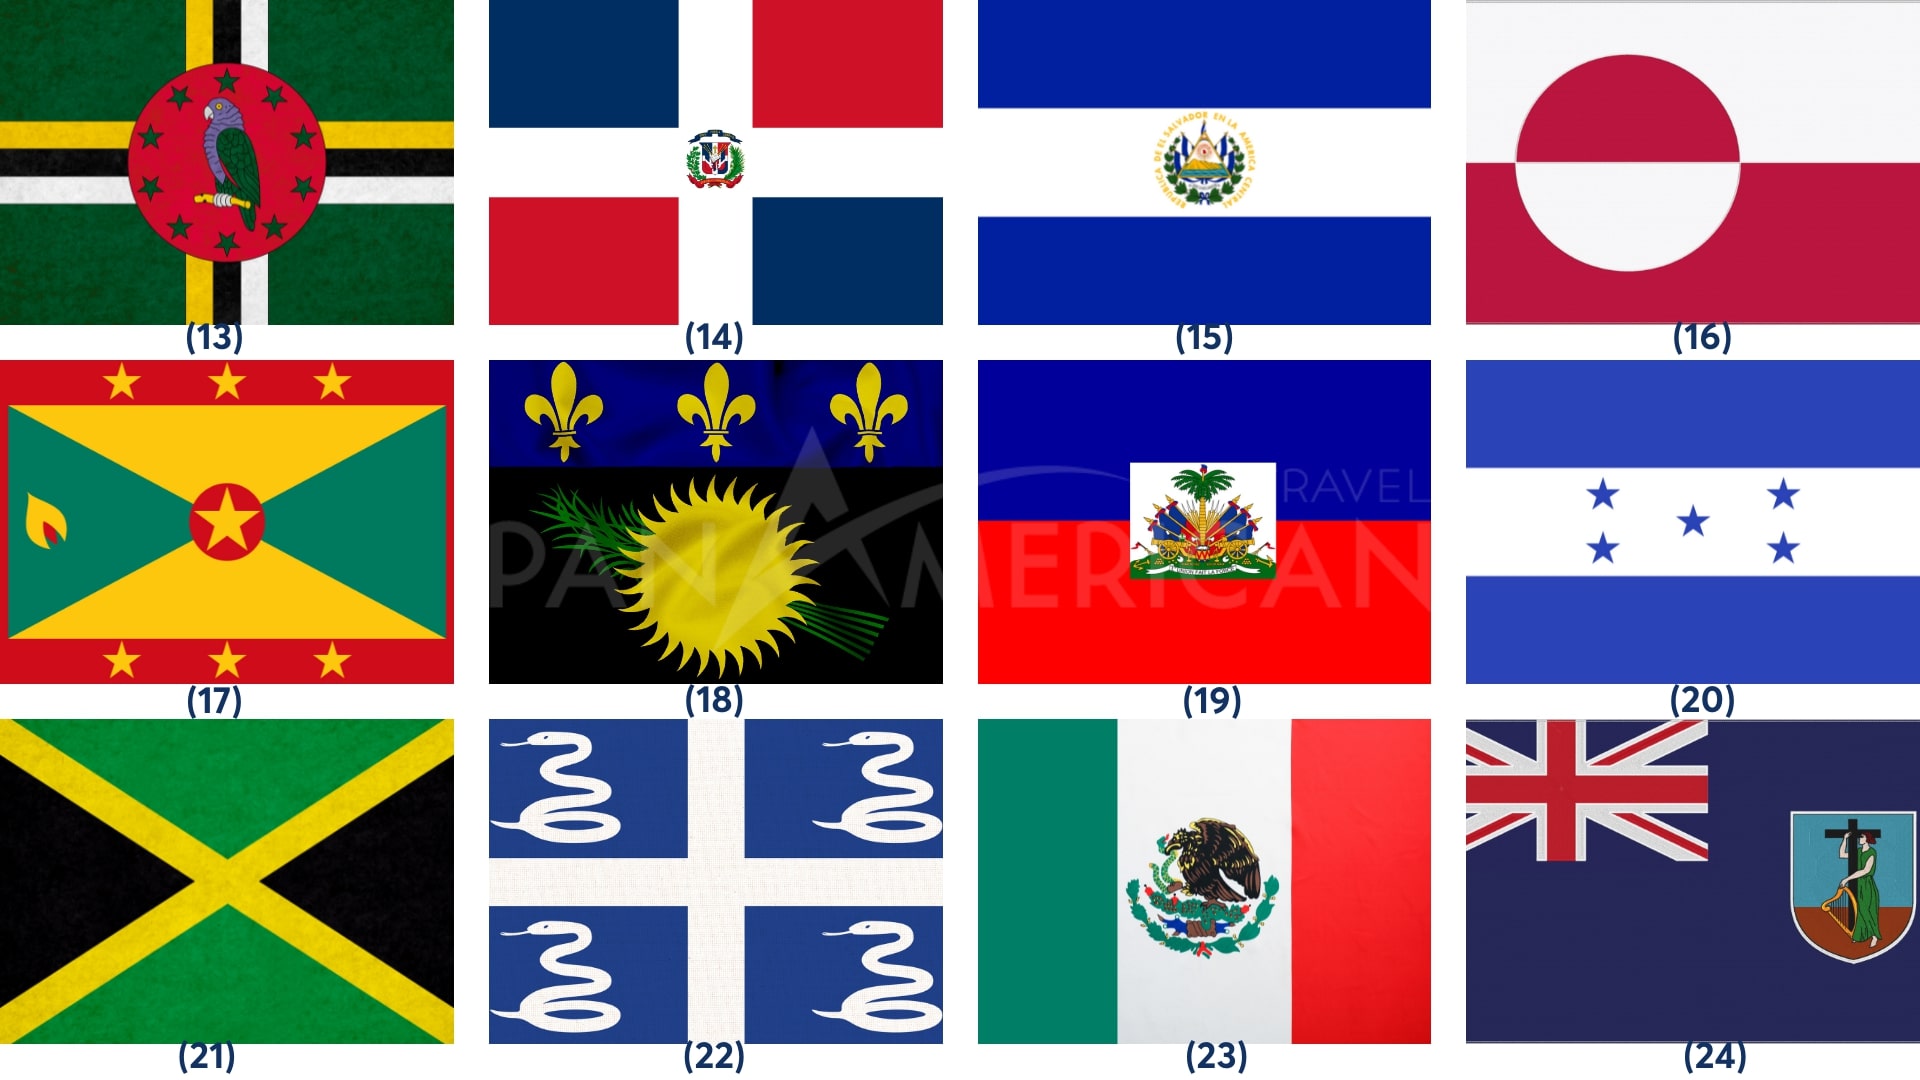 Hình ảnh Quốc kỳ các nước châu Mỹ - Flags of the Americas: 
Cùng ngắm nhìn hình ảnh của các quốc kỳ đặc trưng trên lục địa châu Mỹ, từ Canada ở phía bắc đến Brazil ở phía nam. Mỗi quốc gia có những biểu tượng riêng biệt trong cờ hiệu của họ, nhưng tất cả đều mang ý nghĩa to lớn về sự tự do và độc lập. Hãy khám phá và tôn vinh sự đa dạng và sức mạnh của lục địa này bằng cách xem hình ảnh này.